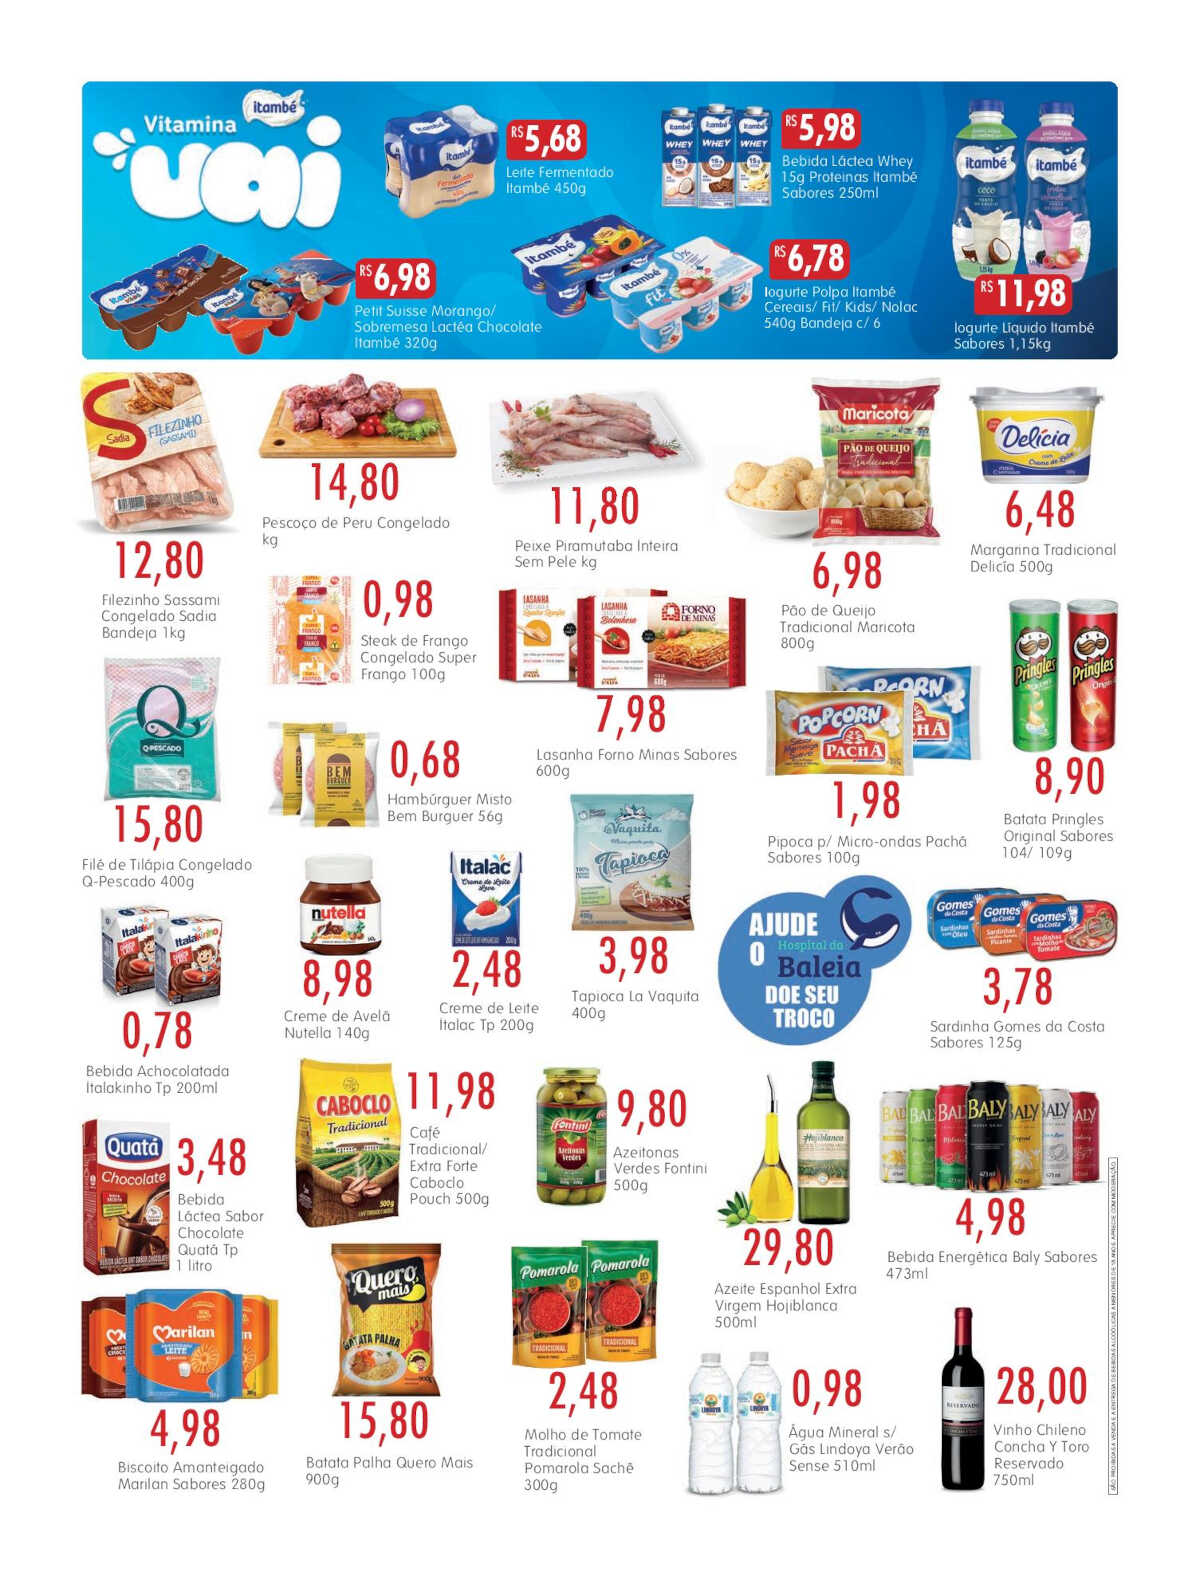 Ofertas Epa Supermercados até 27/09